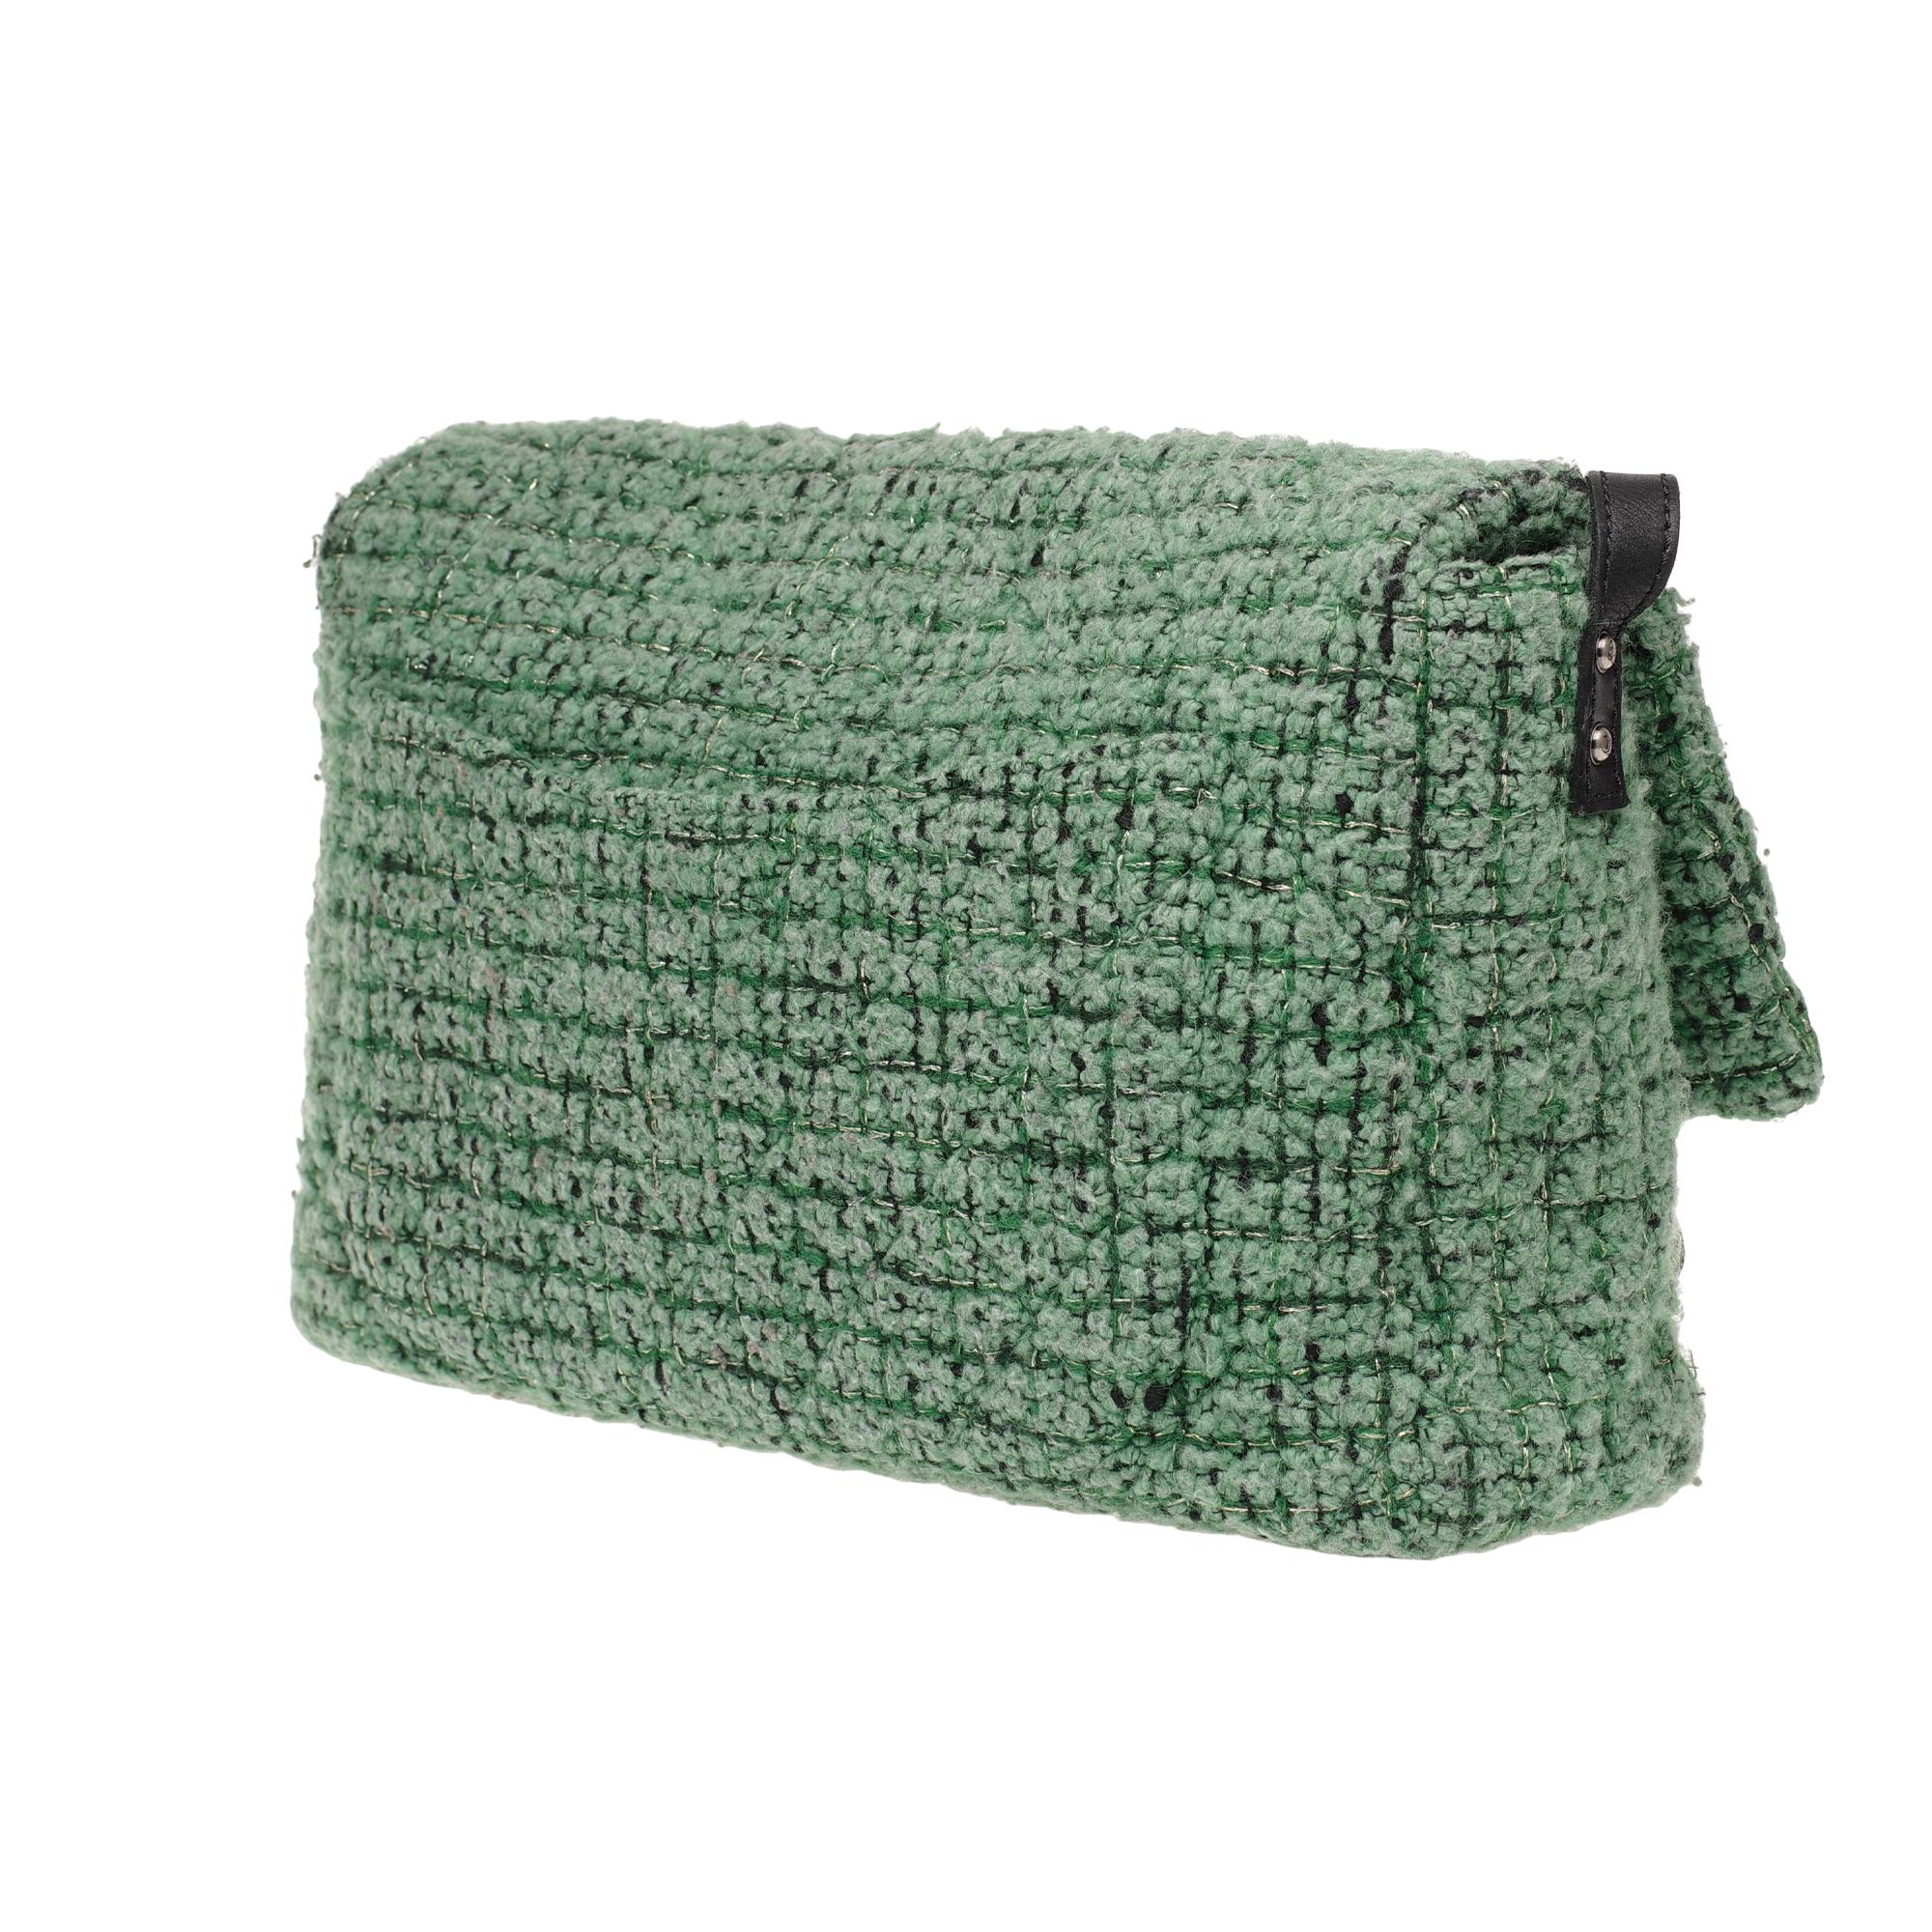 green tweed chanel bag